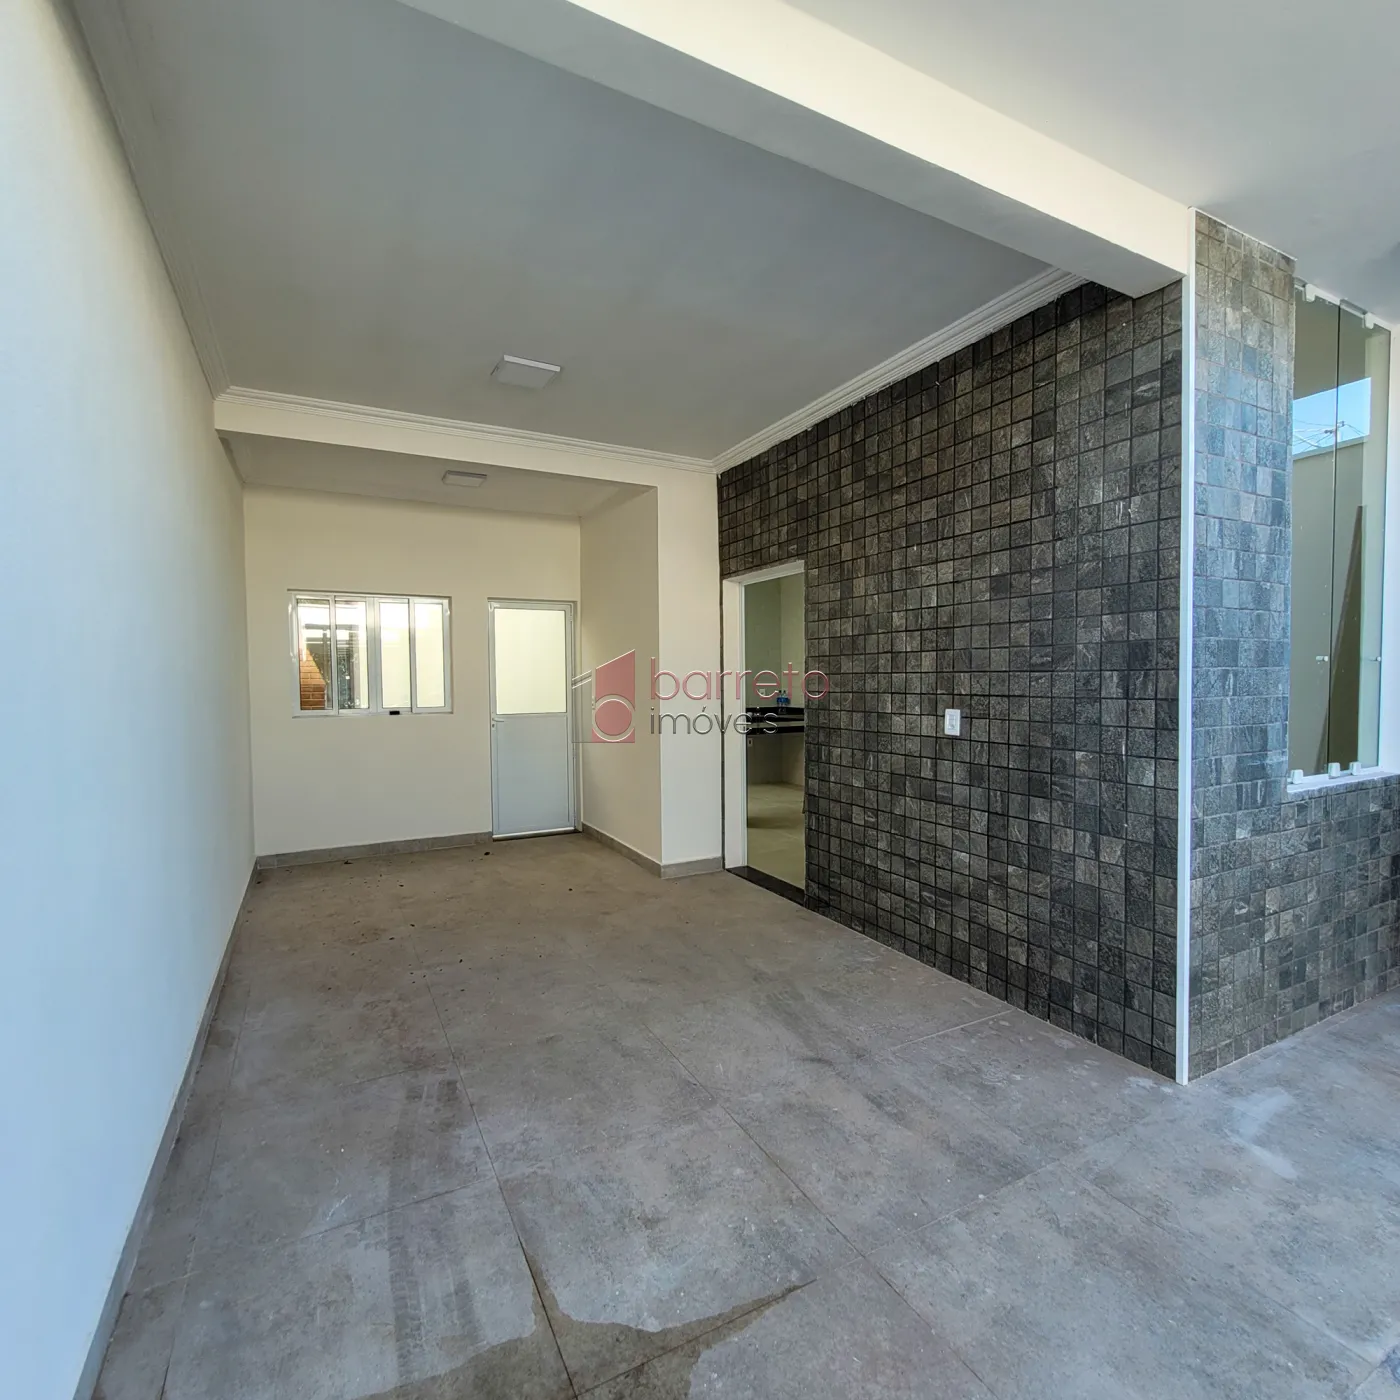 Comprar Casa / Padrão em Jundiaí R$ 590.000,00 - Foto 4